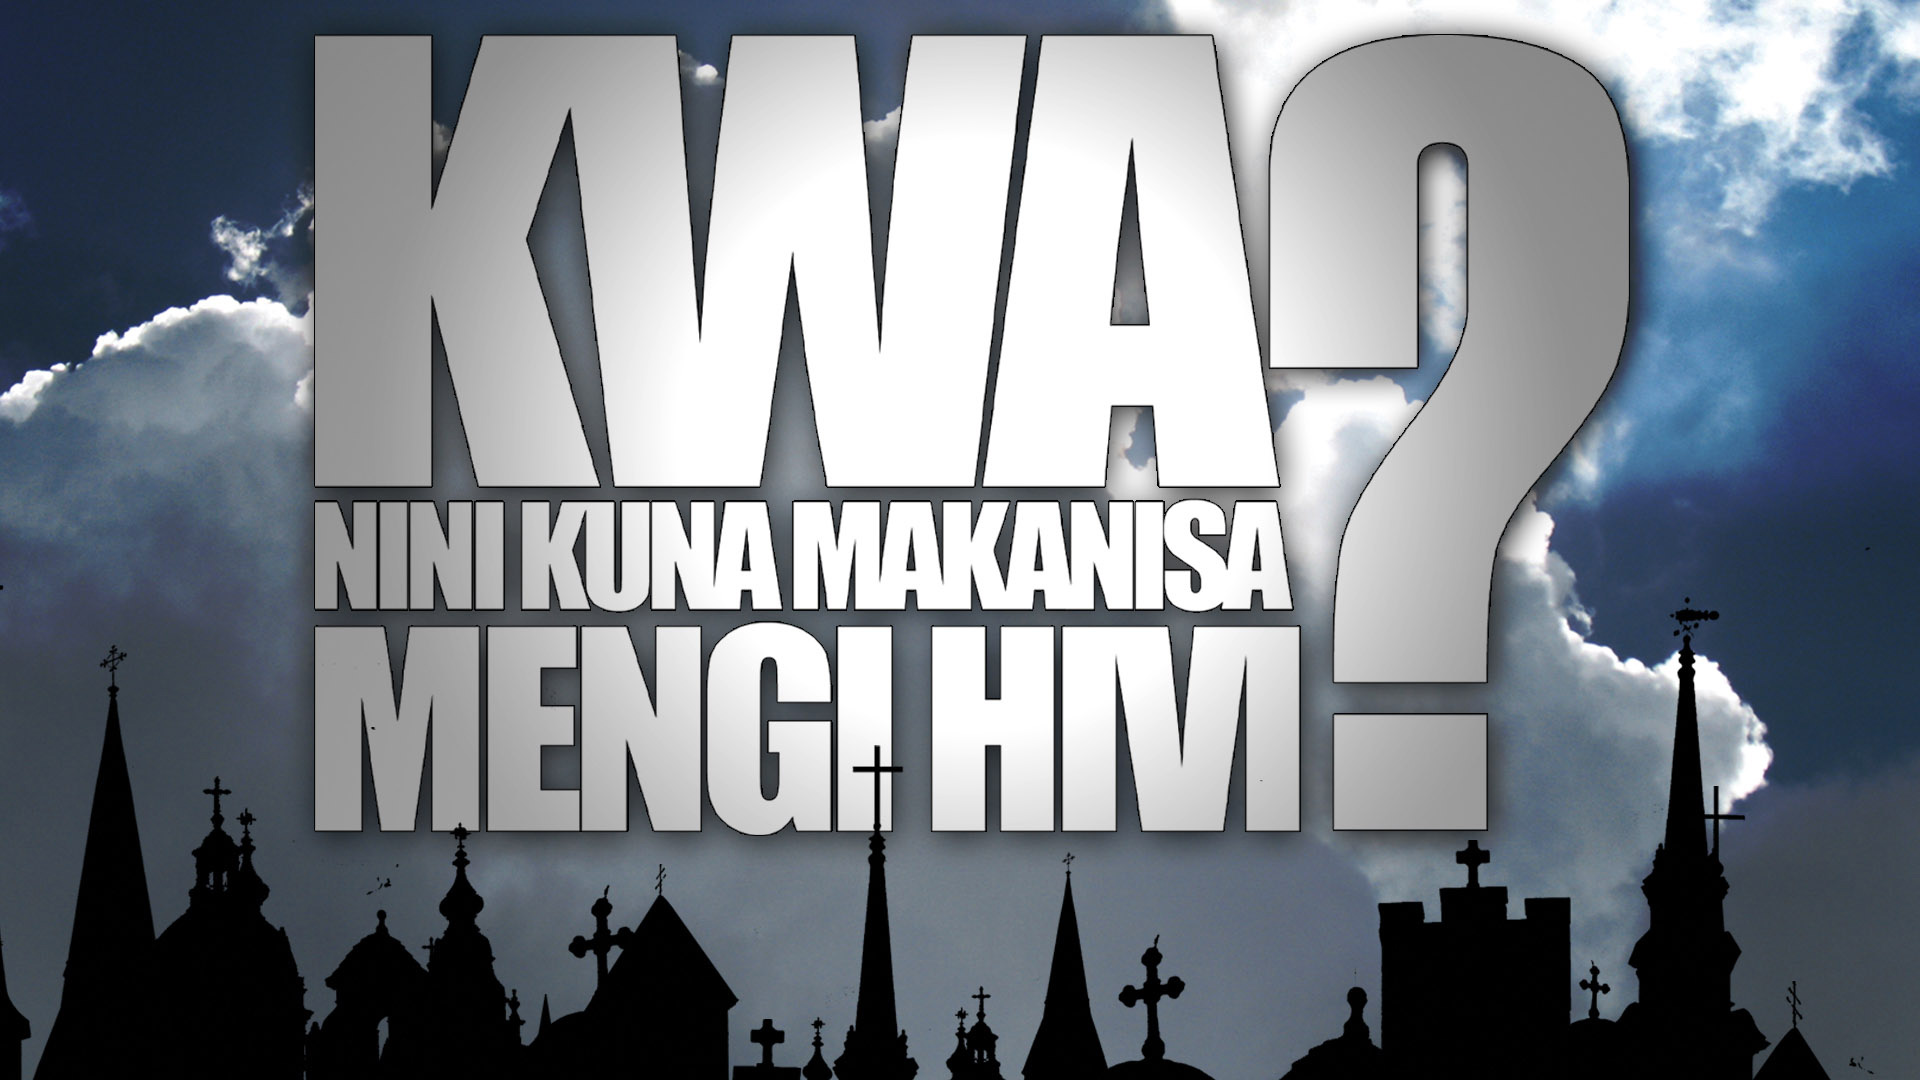 Kwa Nini Kuna Makanisa Mengi Hivi? (Why Are There So Many Churches?) - Swahili Version